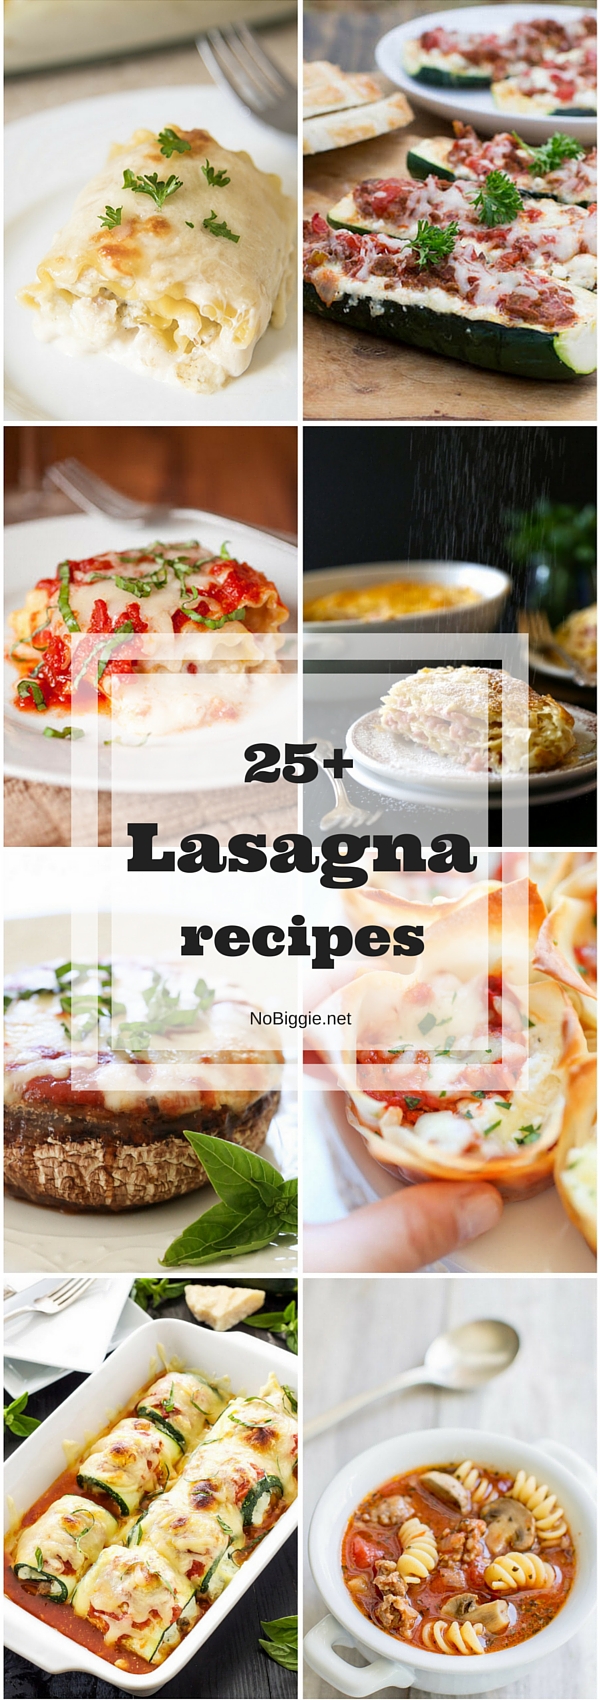 25+ Lasagna recipes | NoBiggie.net